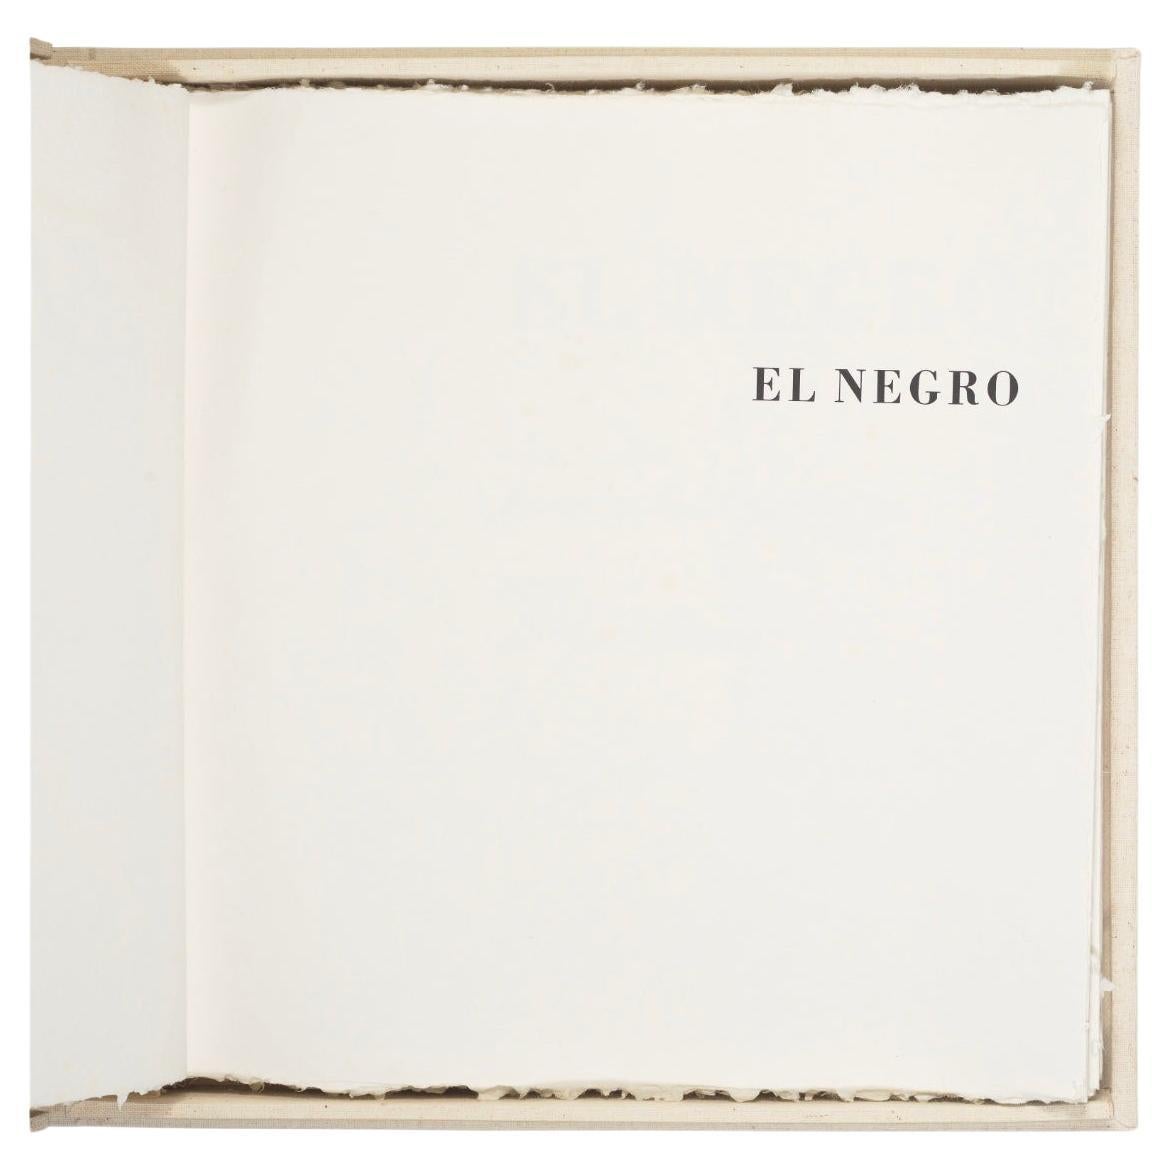 El Negro - Robert Motherwell (1915-1991) For Sale